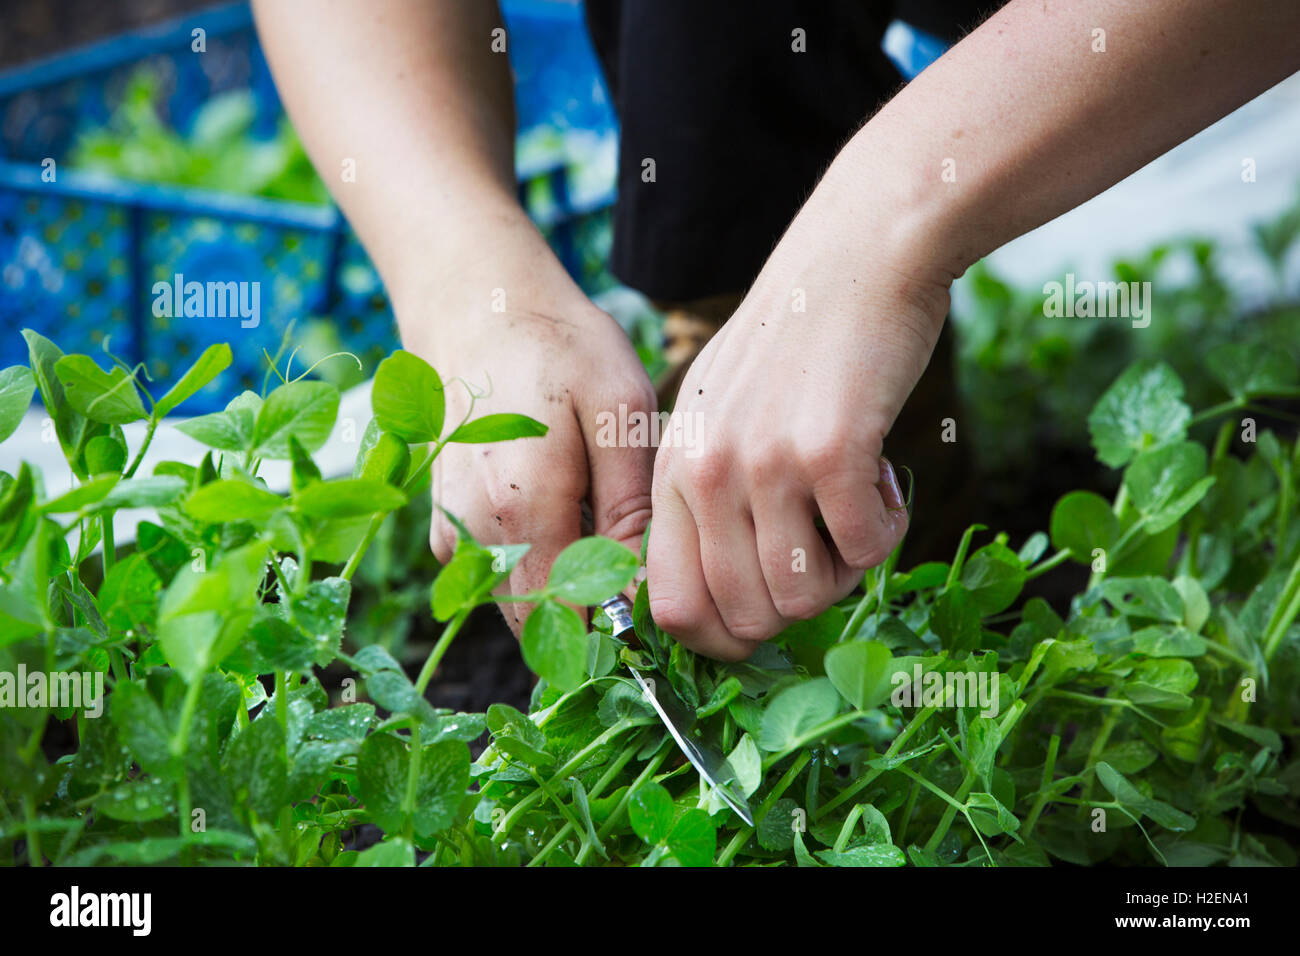 Eine Person Kommissionierung frischen grünen Salat Blätter eines Bestandes. Stockfoto